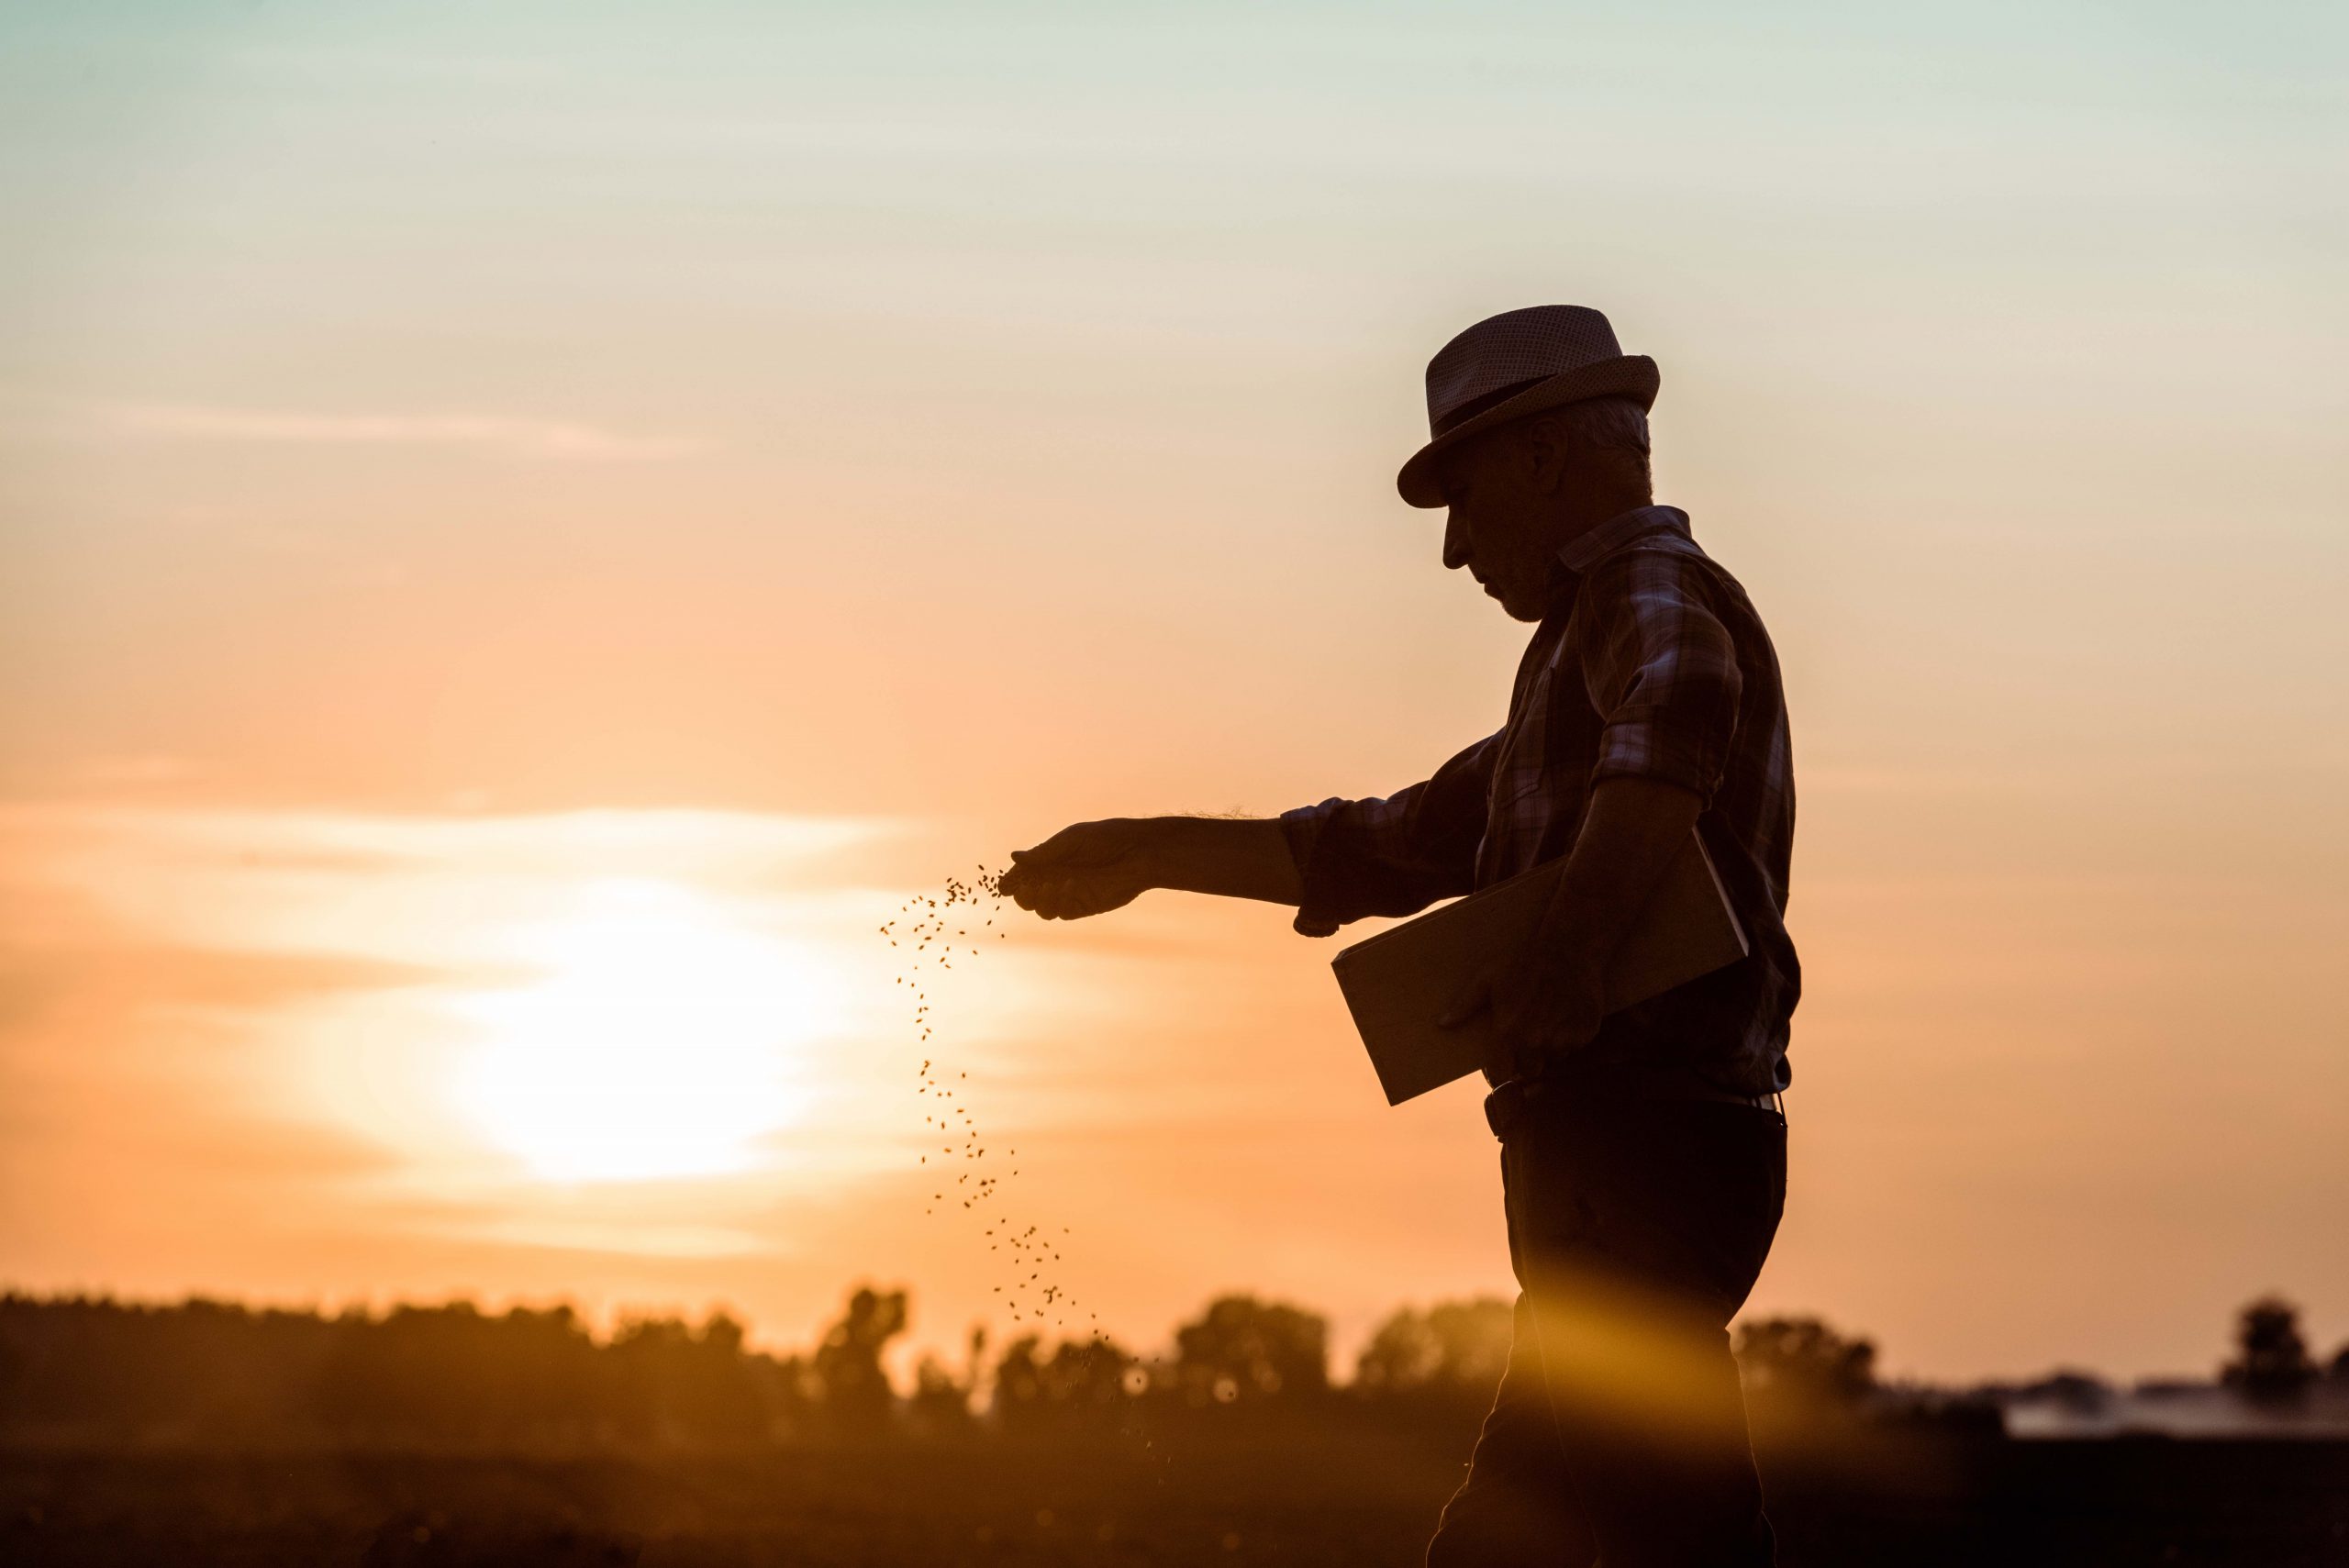 Profil eines älteren Bauern mit Strohhut, der bei Sonnenuntergang Samen aussät